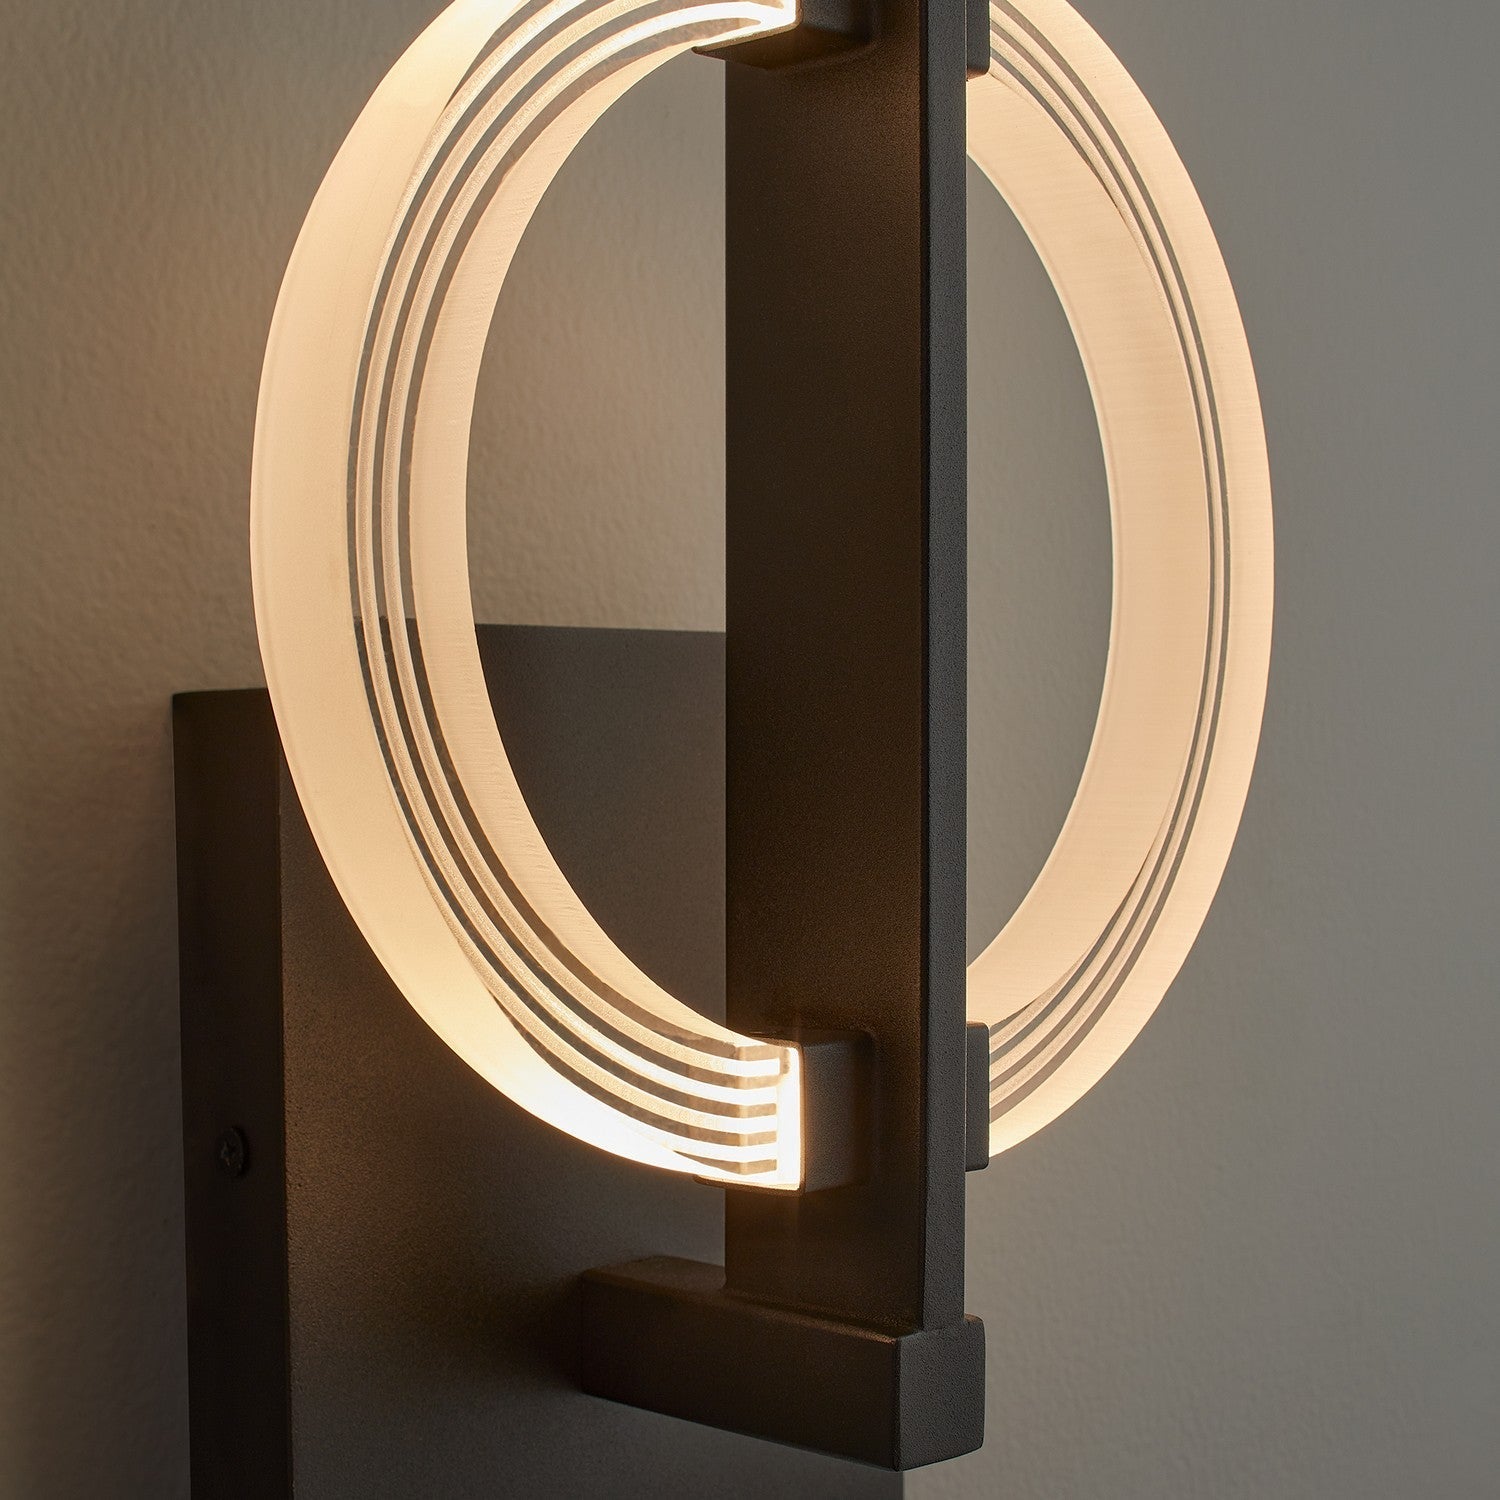 Oxygen ARENA 3-5014-15 Modern Wall Sconce Light Fixture - Black